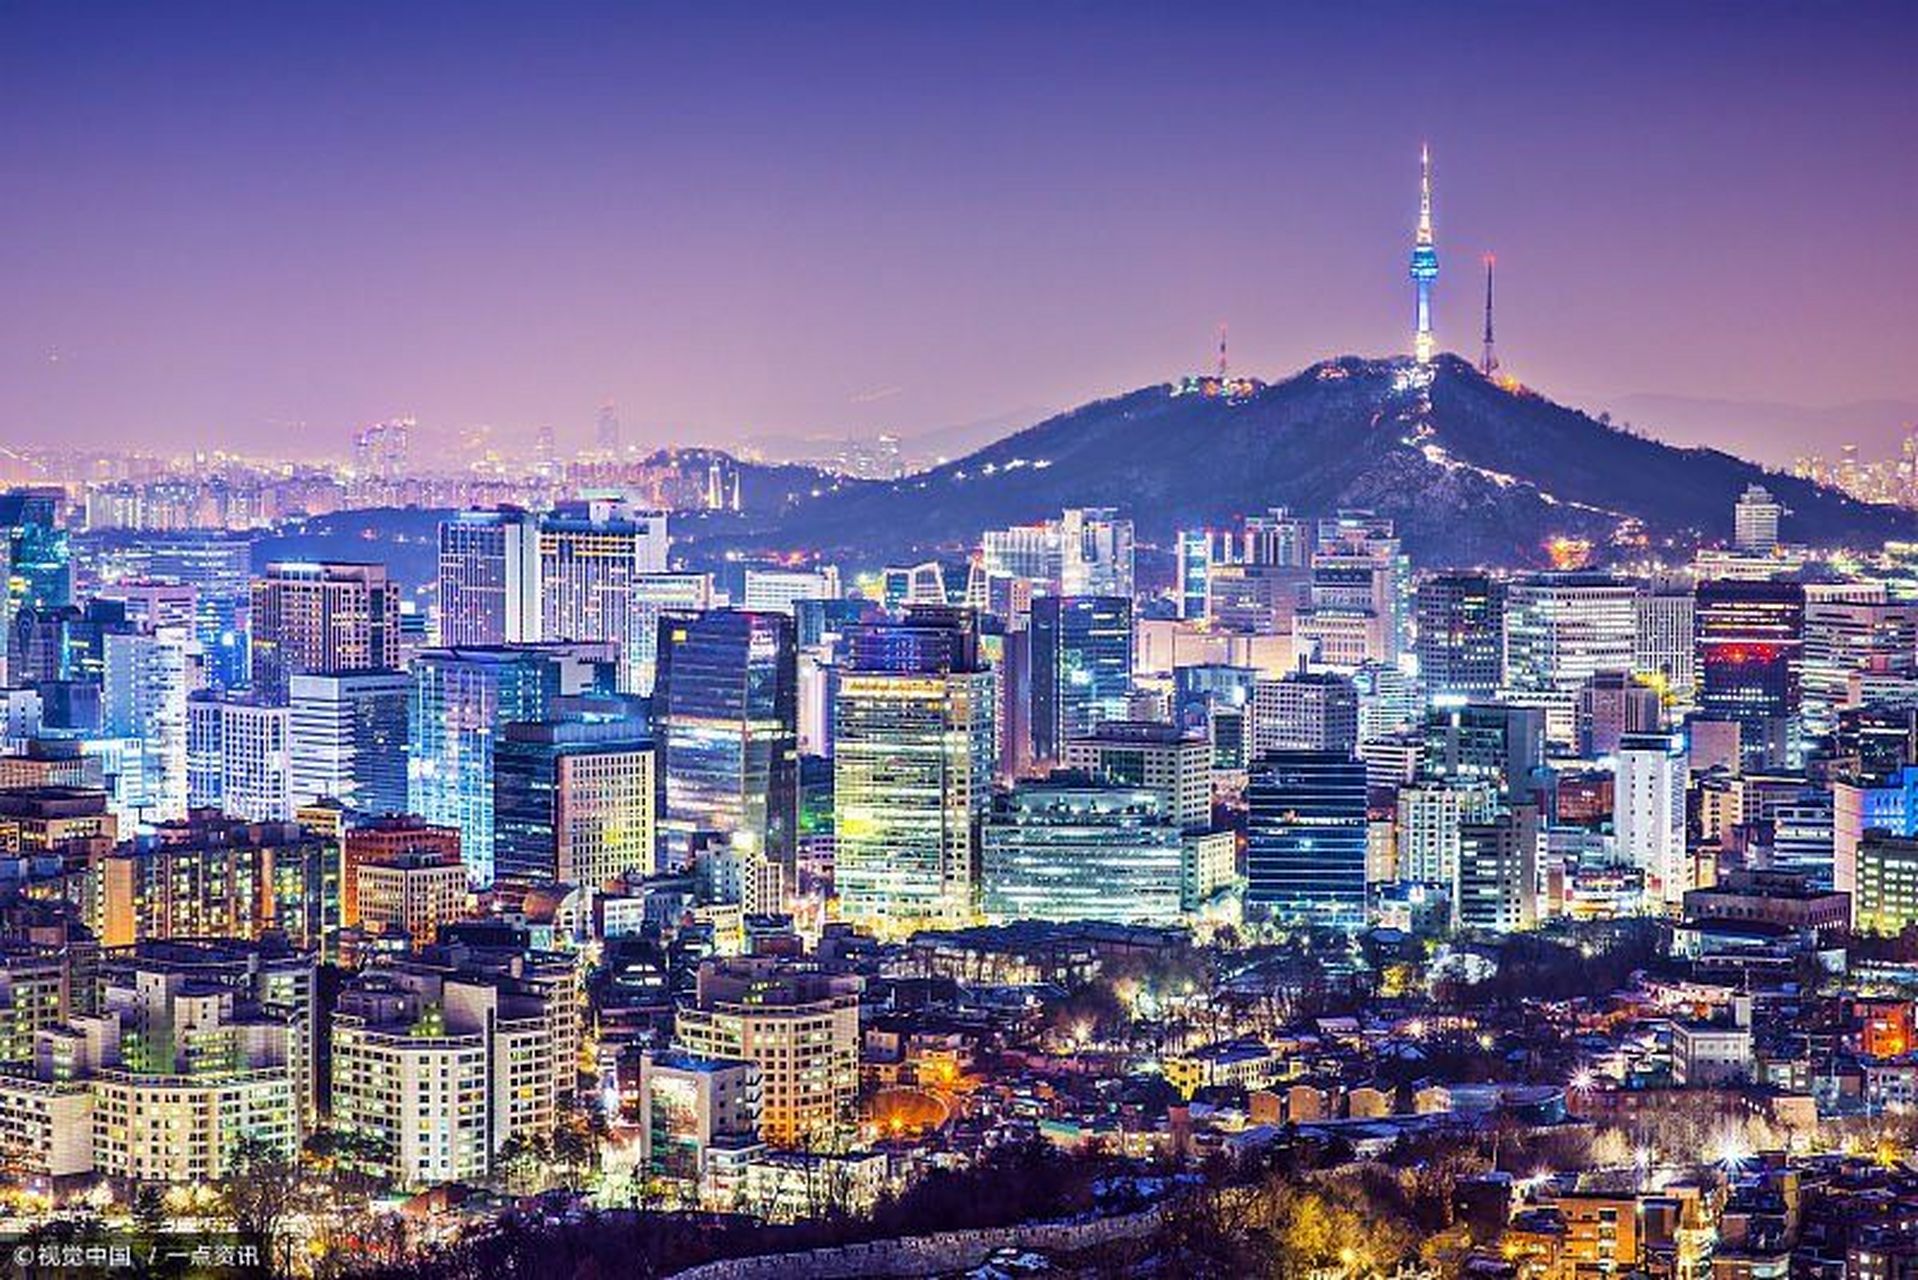 首尔江南区,这个著名的富人区是全韩房价最高的地方,但这里的楼市正在